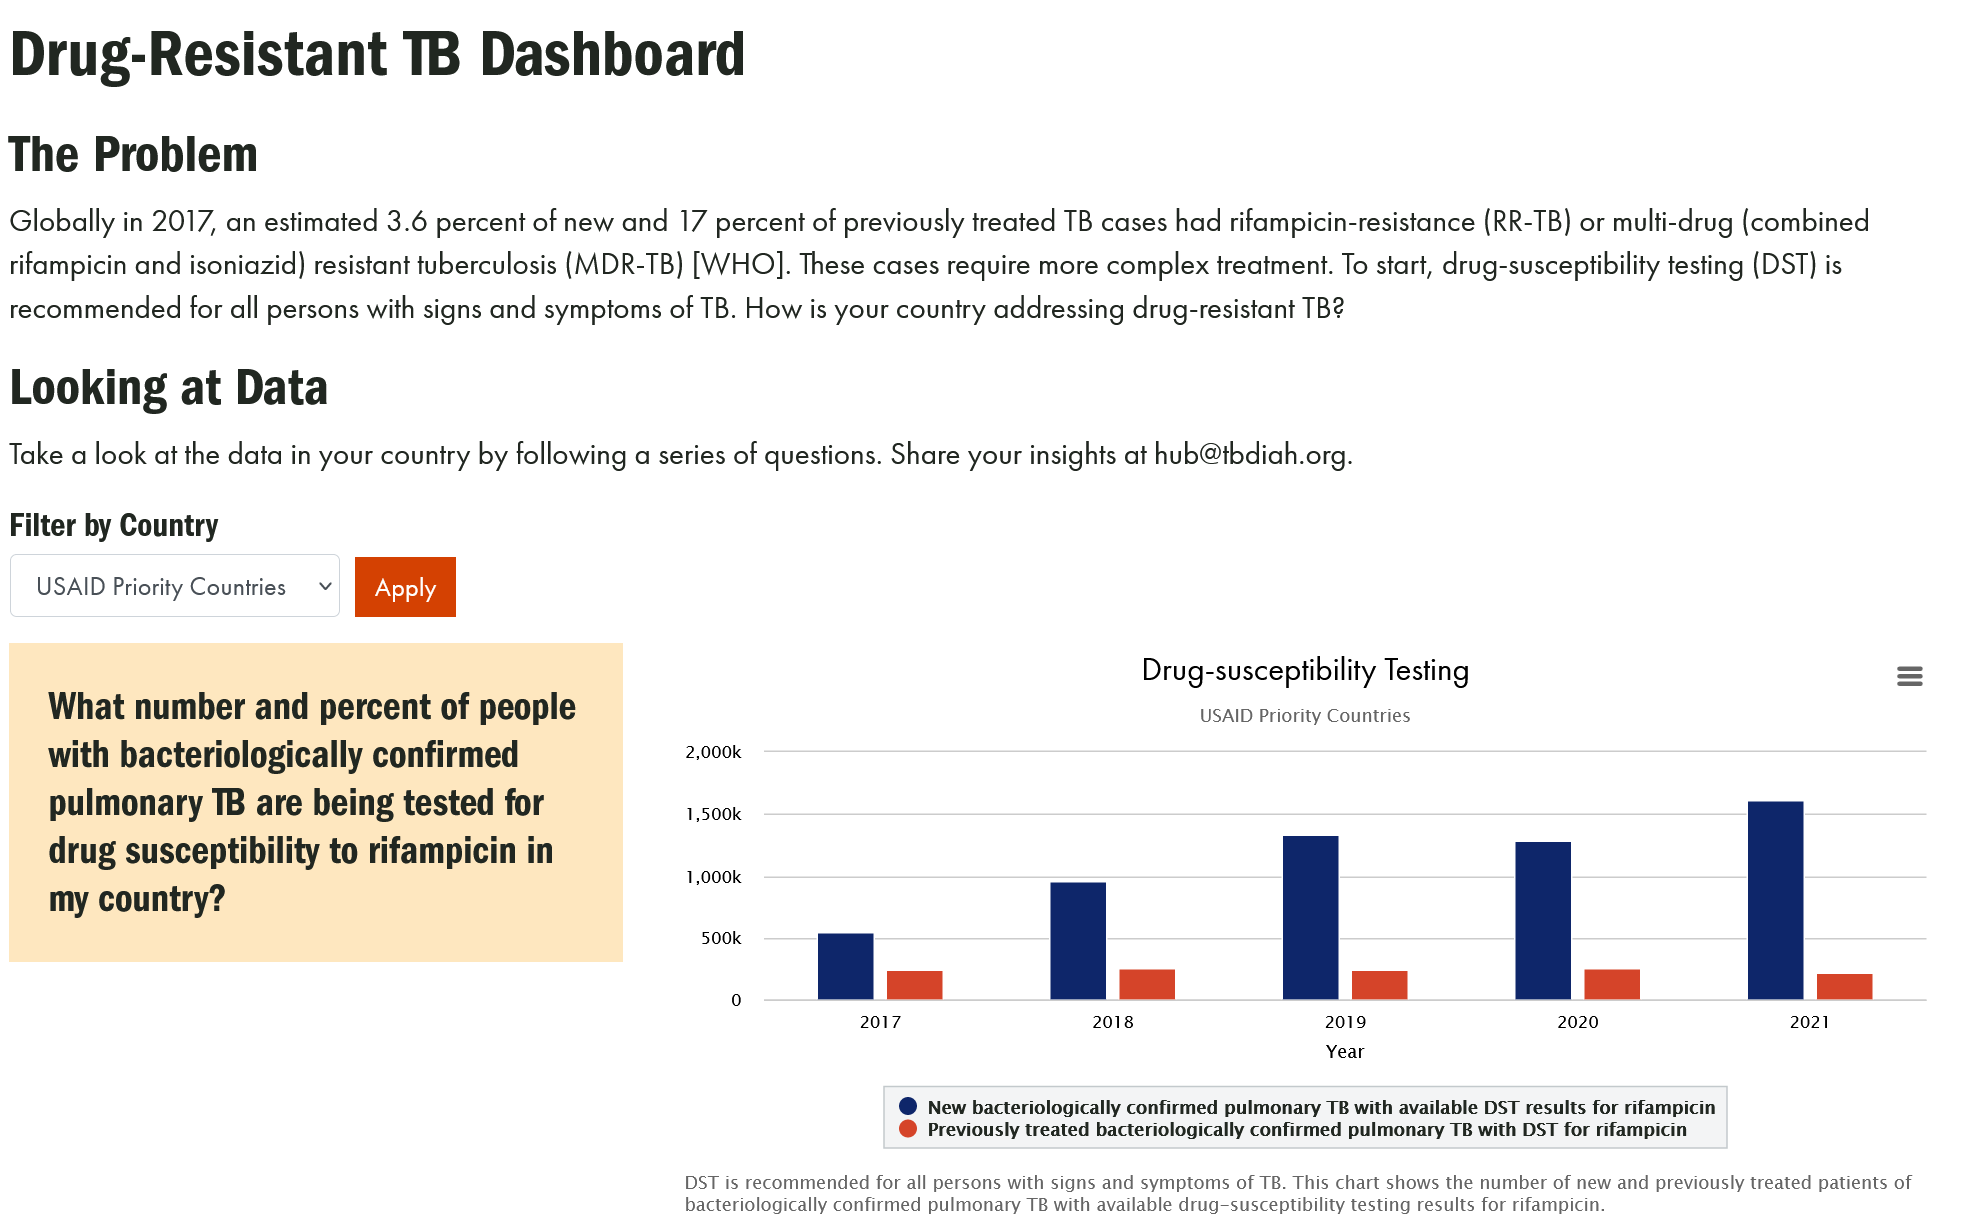 DR-TB Dashboard